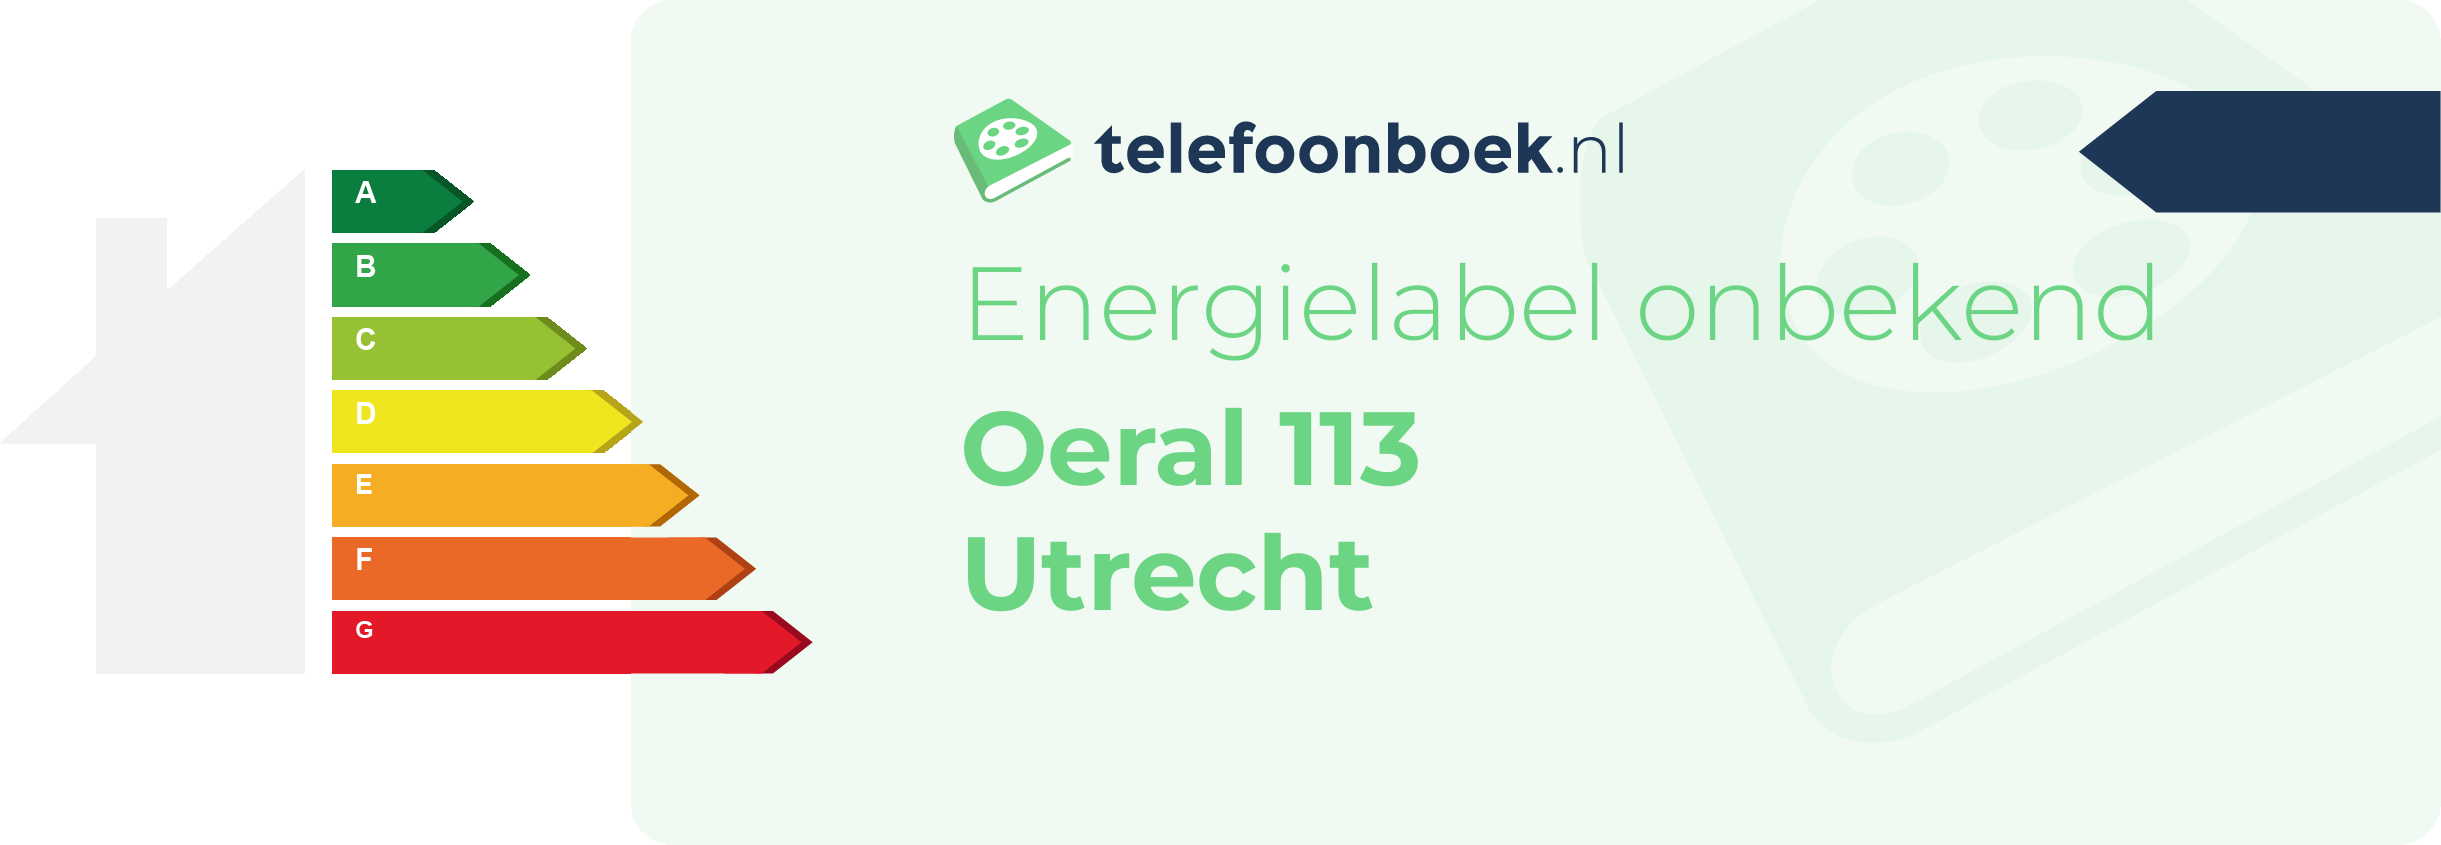 Energielabel Oeral 113 Utrecht